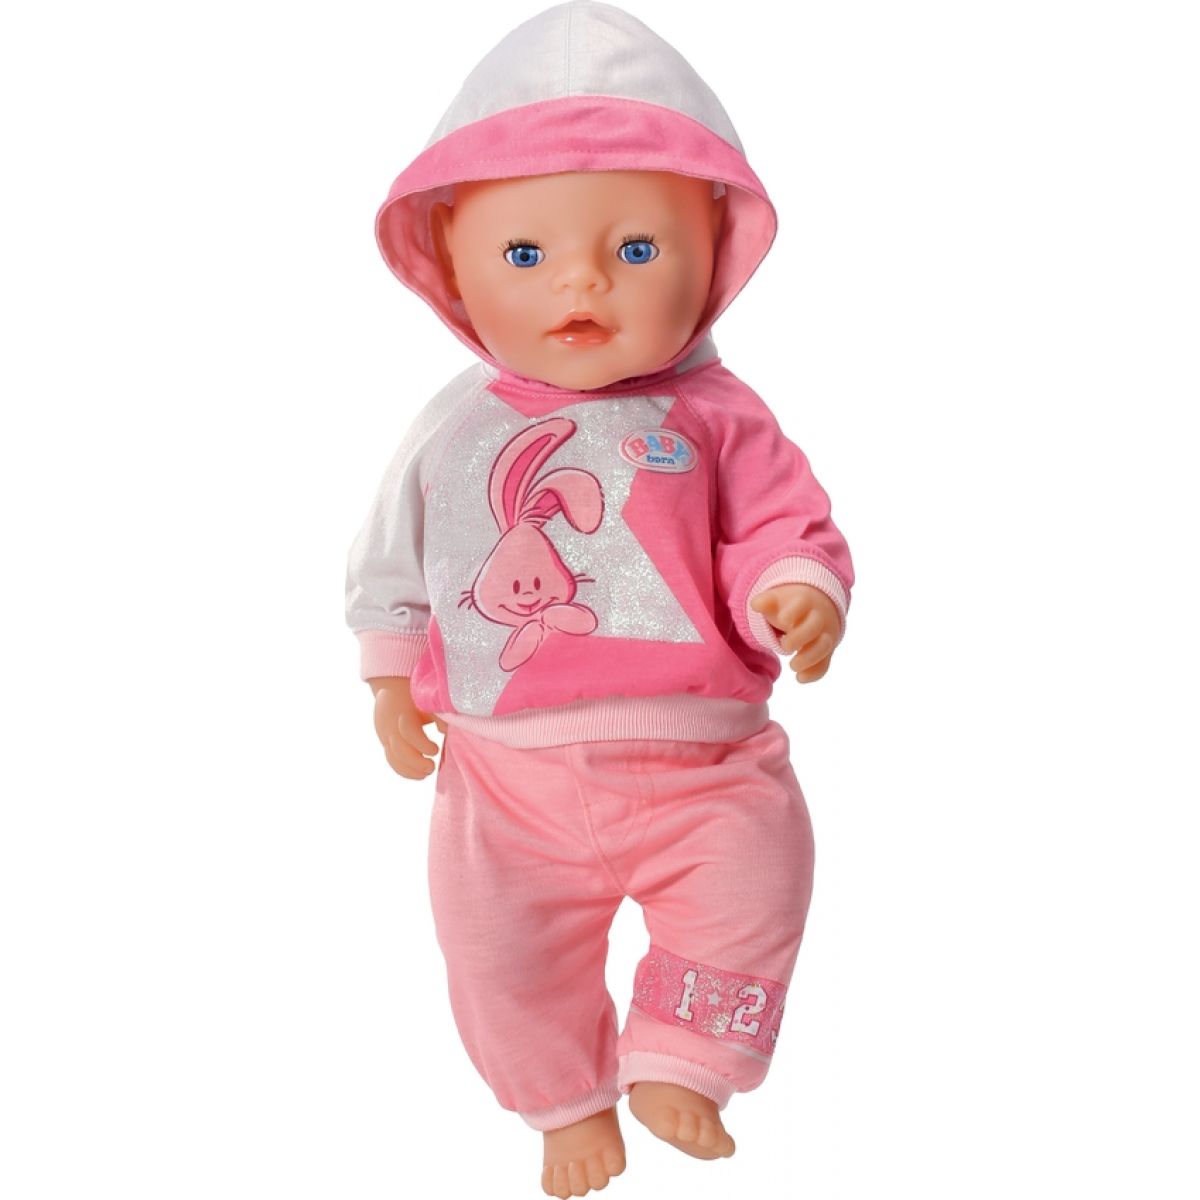 Где купить куклу недорого. Кукла Беби Борн. Zapf Creation комплект спортивной одежды для куклы Baby born 821374. Одежда Беби Борн розовый костюм. Спортивный костюм для бейби Борн.